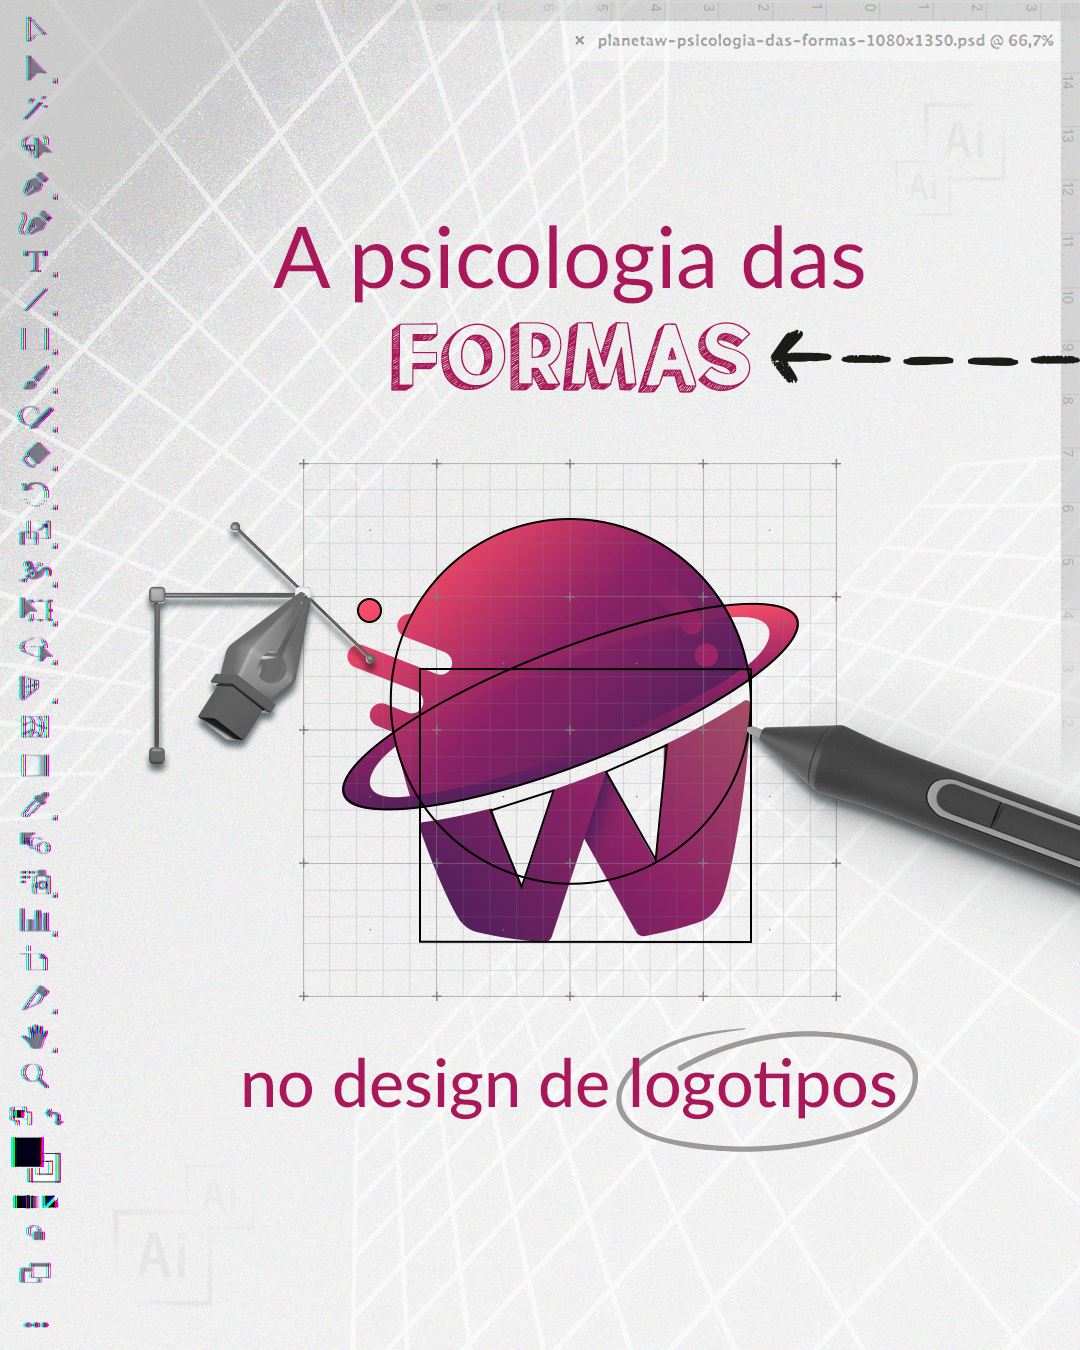 A psicologia das formas no design de logotipos